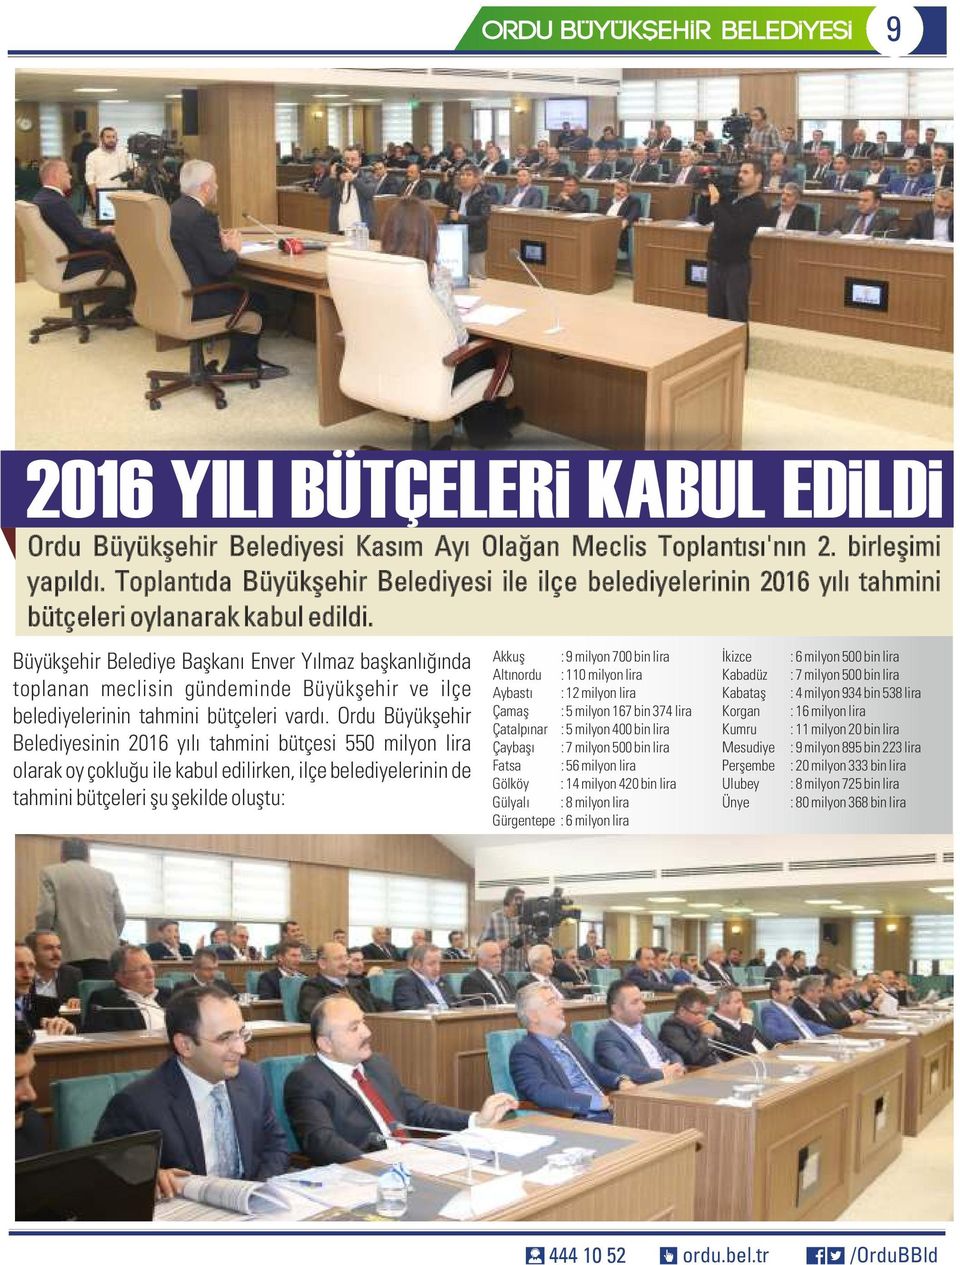 Büyükşehir Belediye Başkanı Enver Yılmaz başkanlığında toplanan meclisin gündeminde Büyükşehir ve ilçe belediyelerinin tahmini bütçeleri vardı.